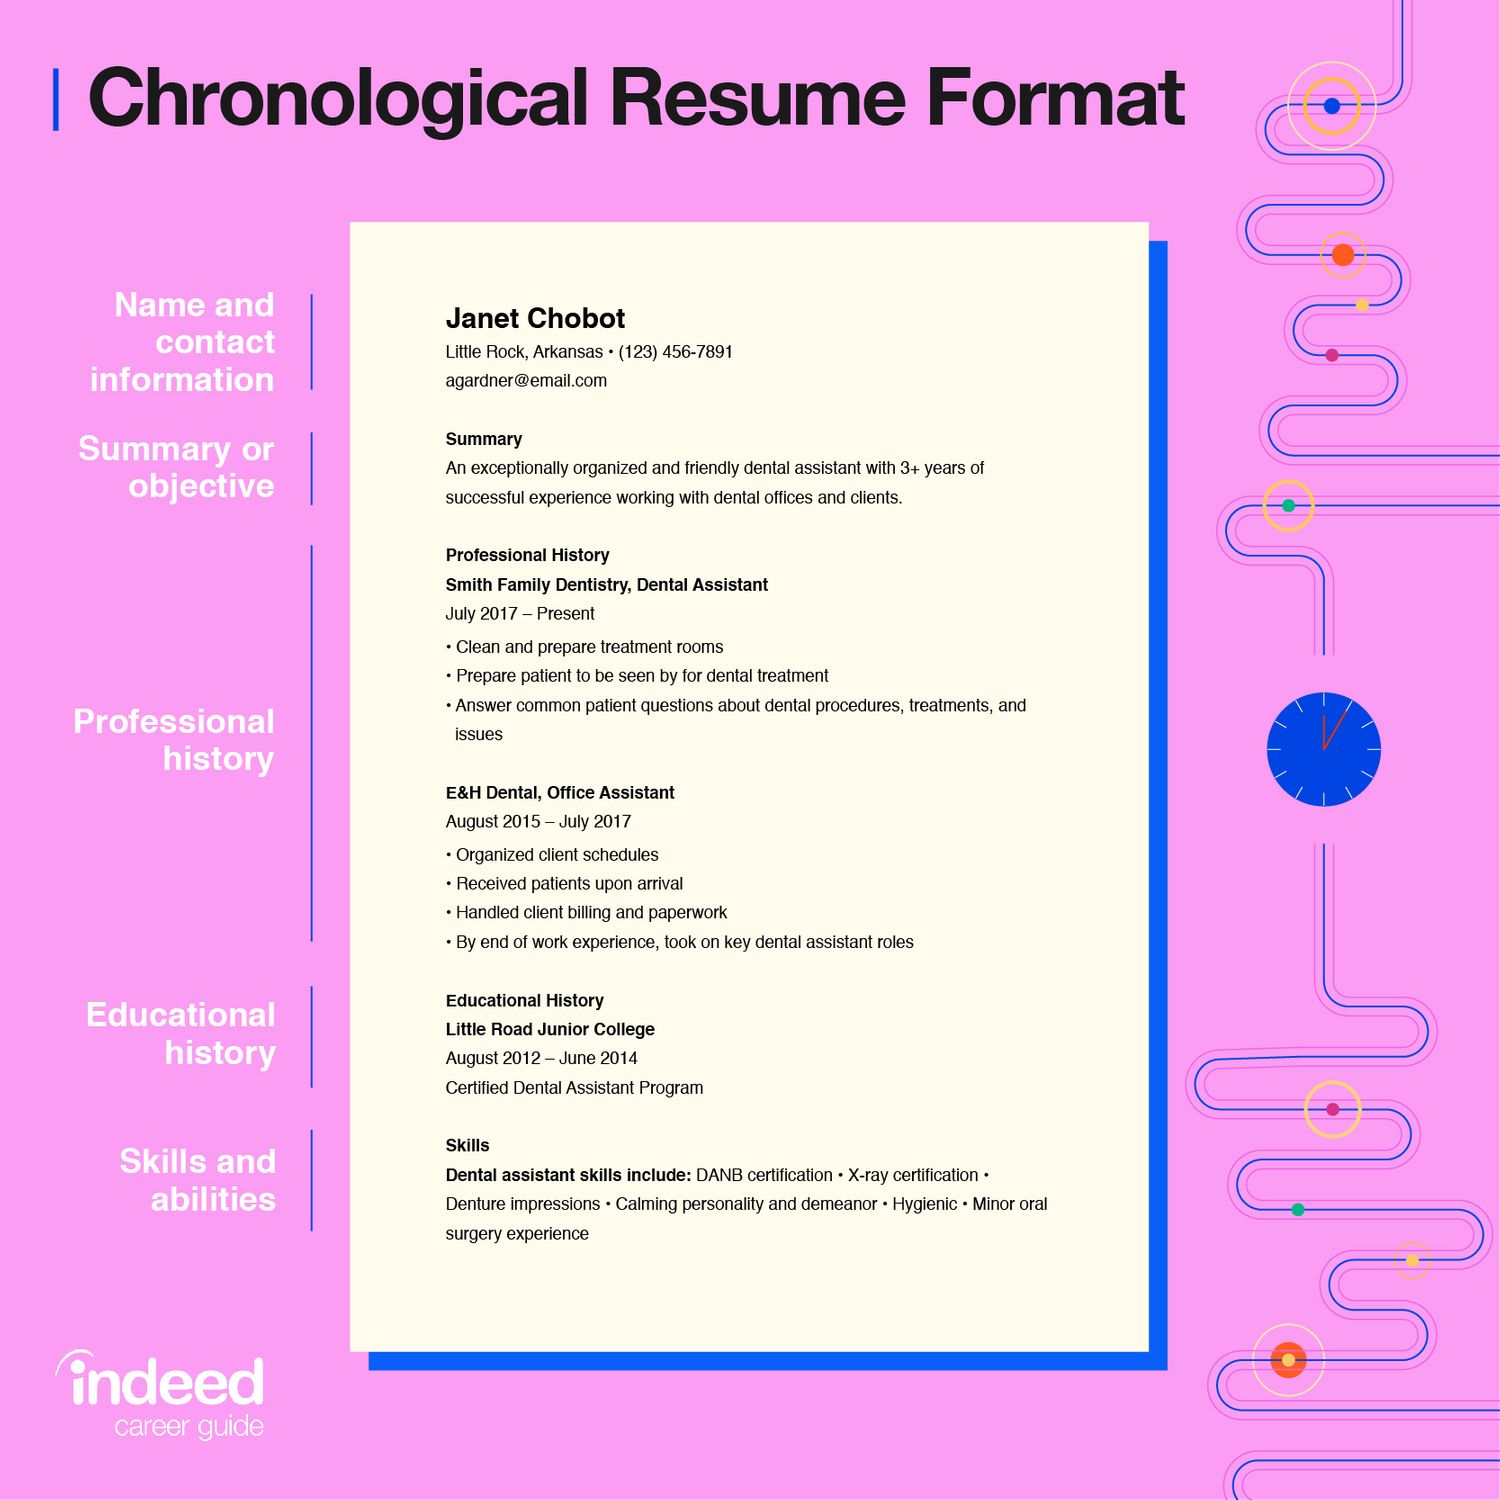 make my resume.com